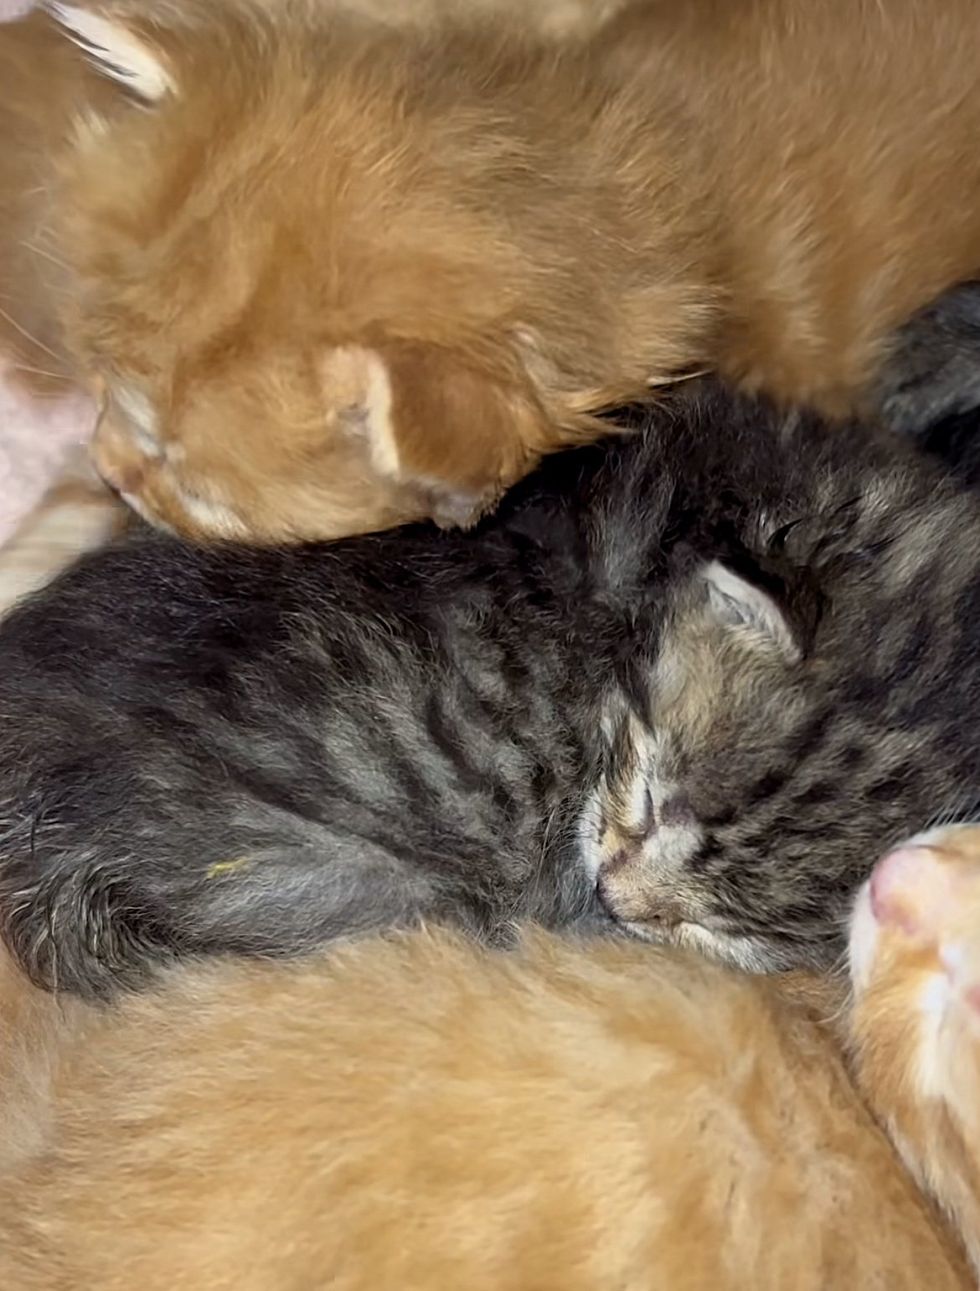 snuggling kittens